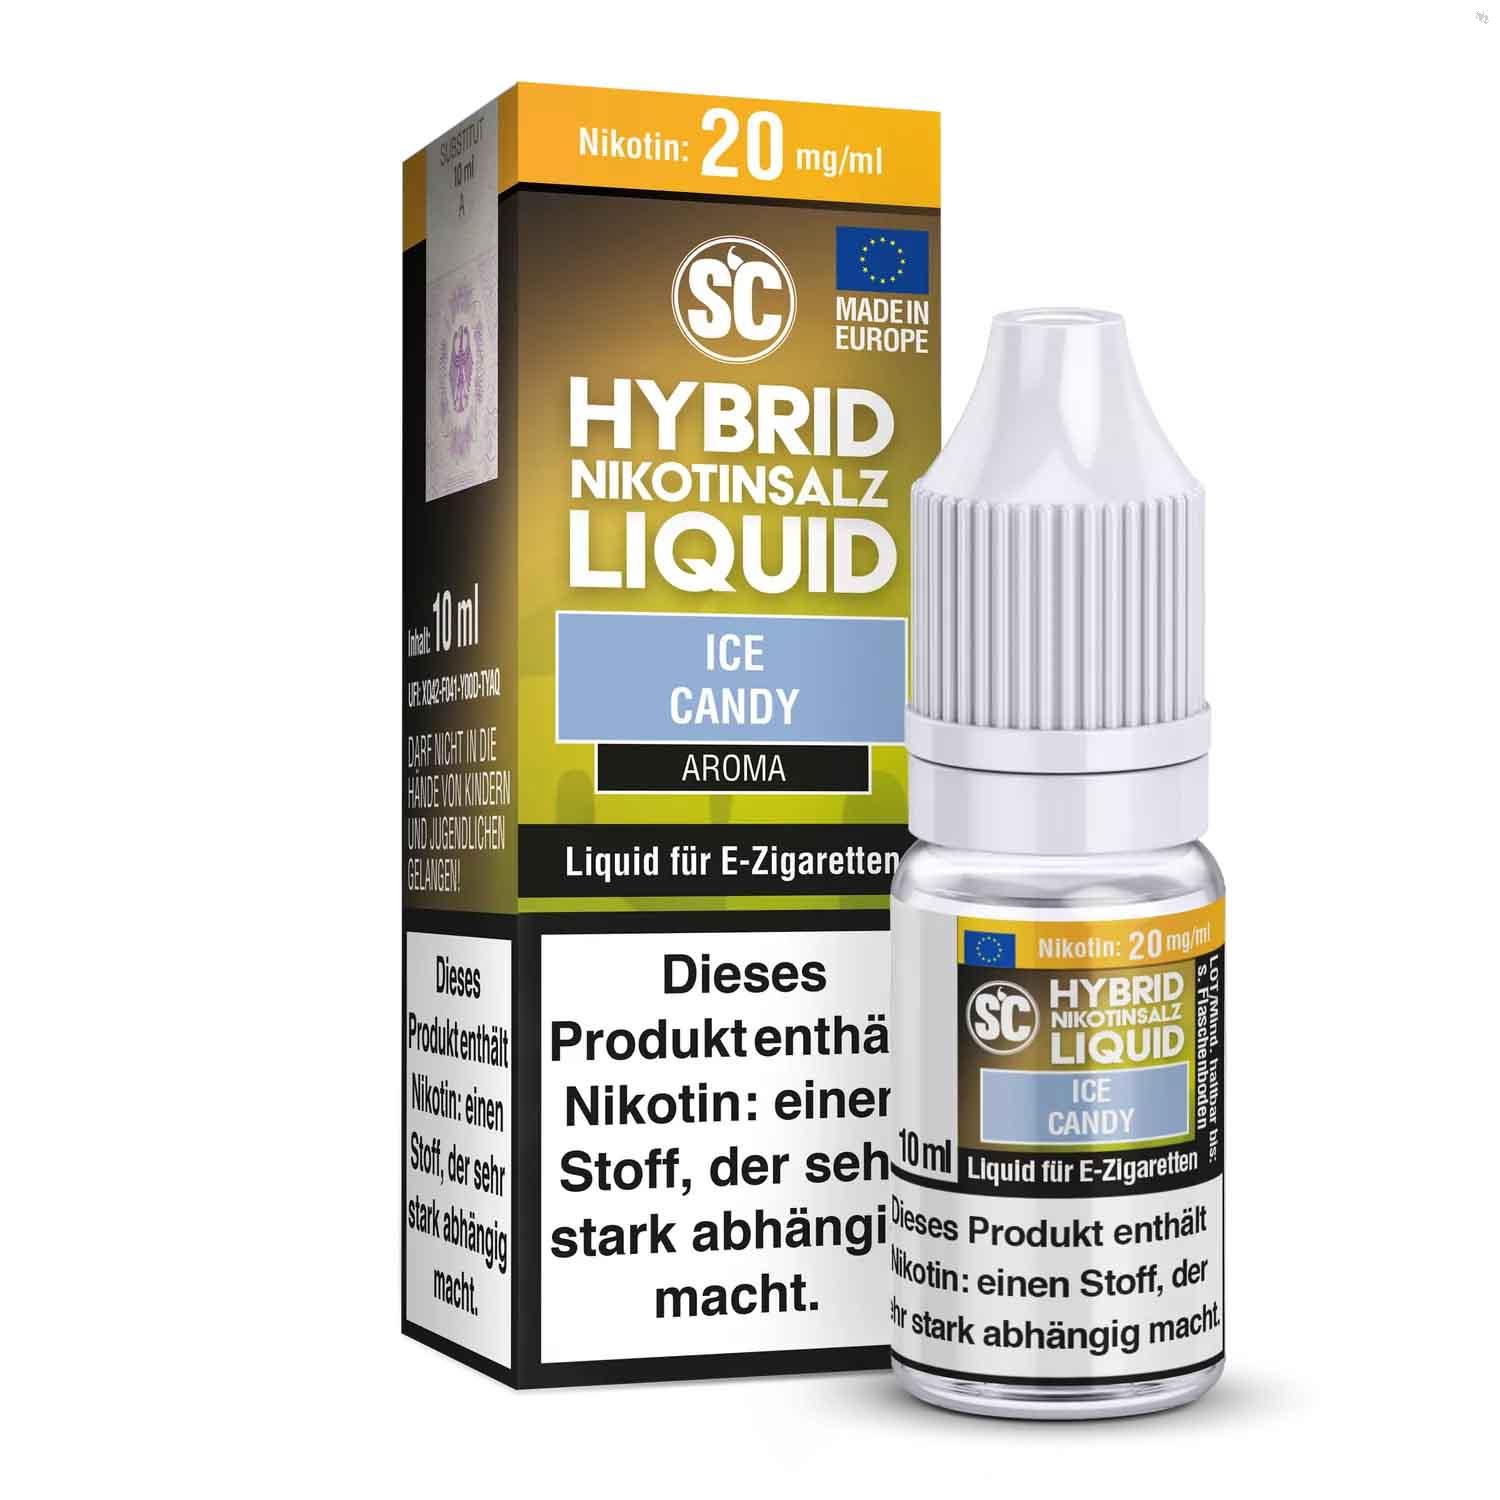 SC - Ice Candy Hybrid Nikotinsalz Liquid ✅ Günstig kaufen! 